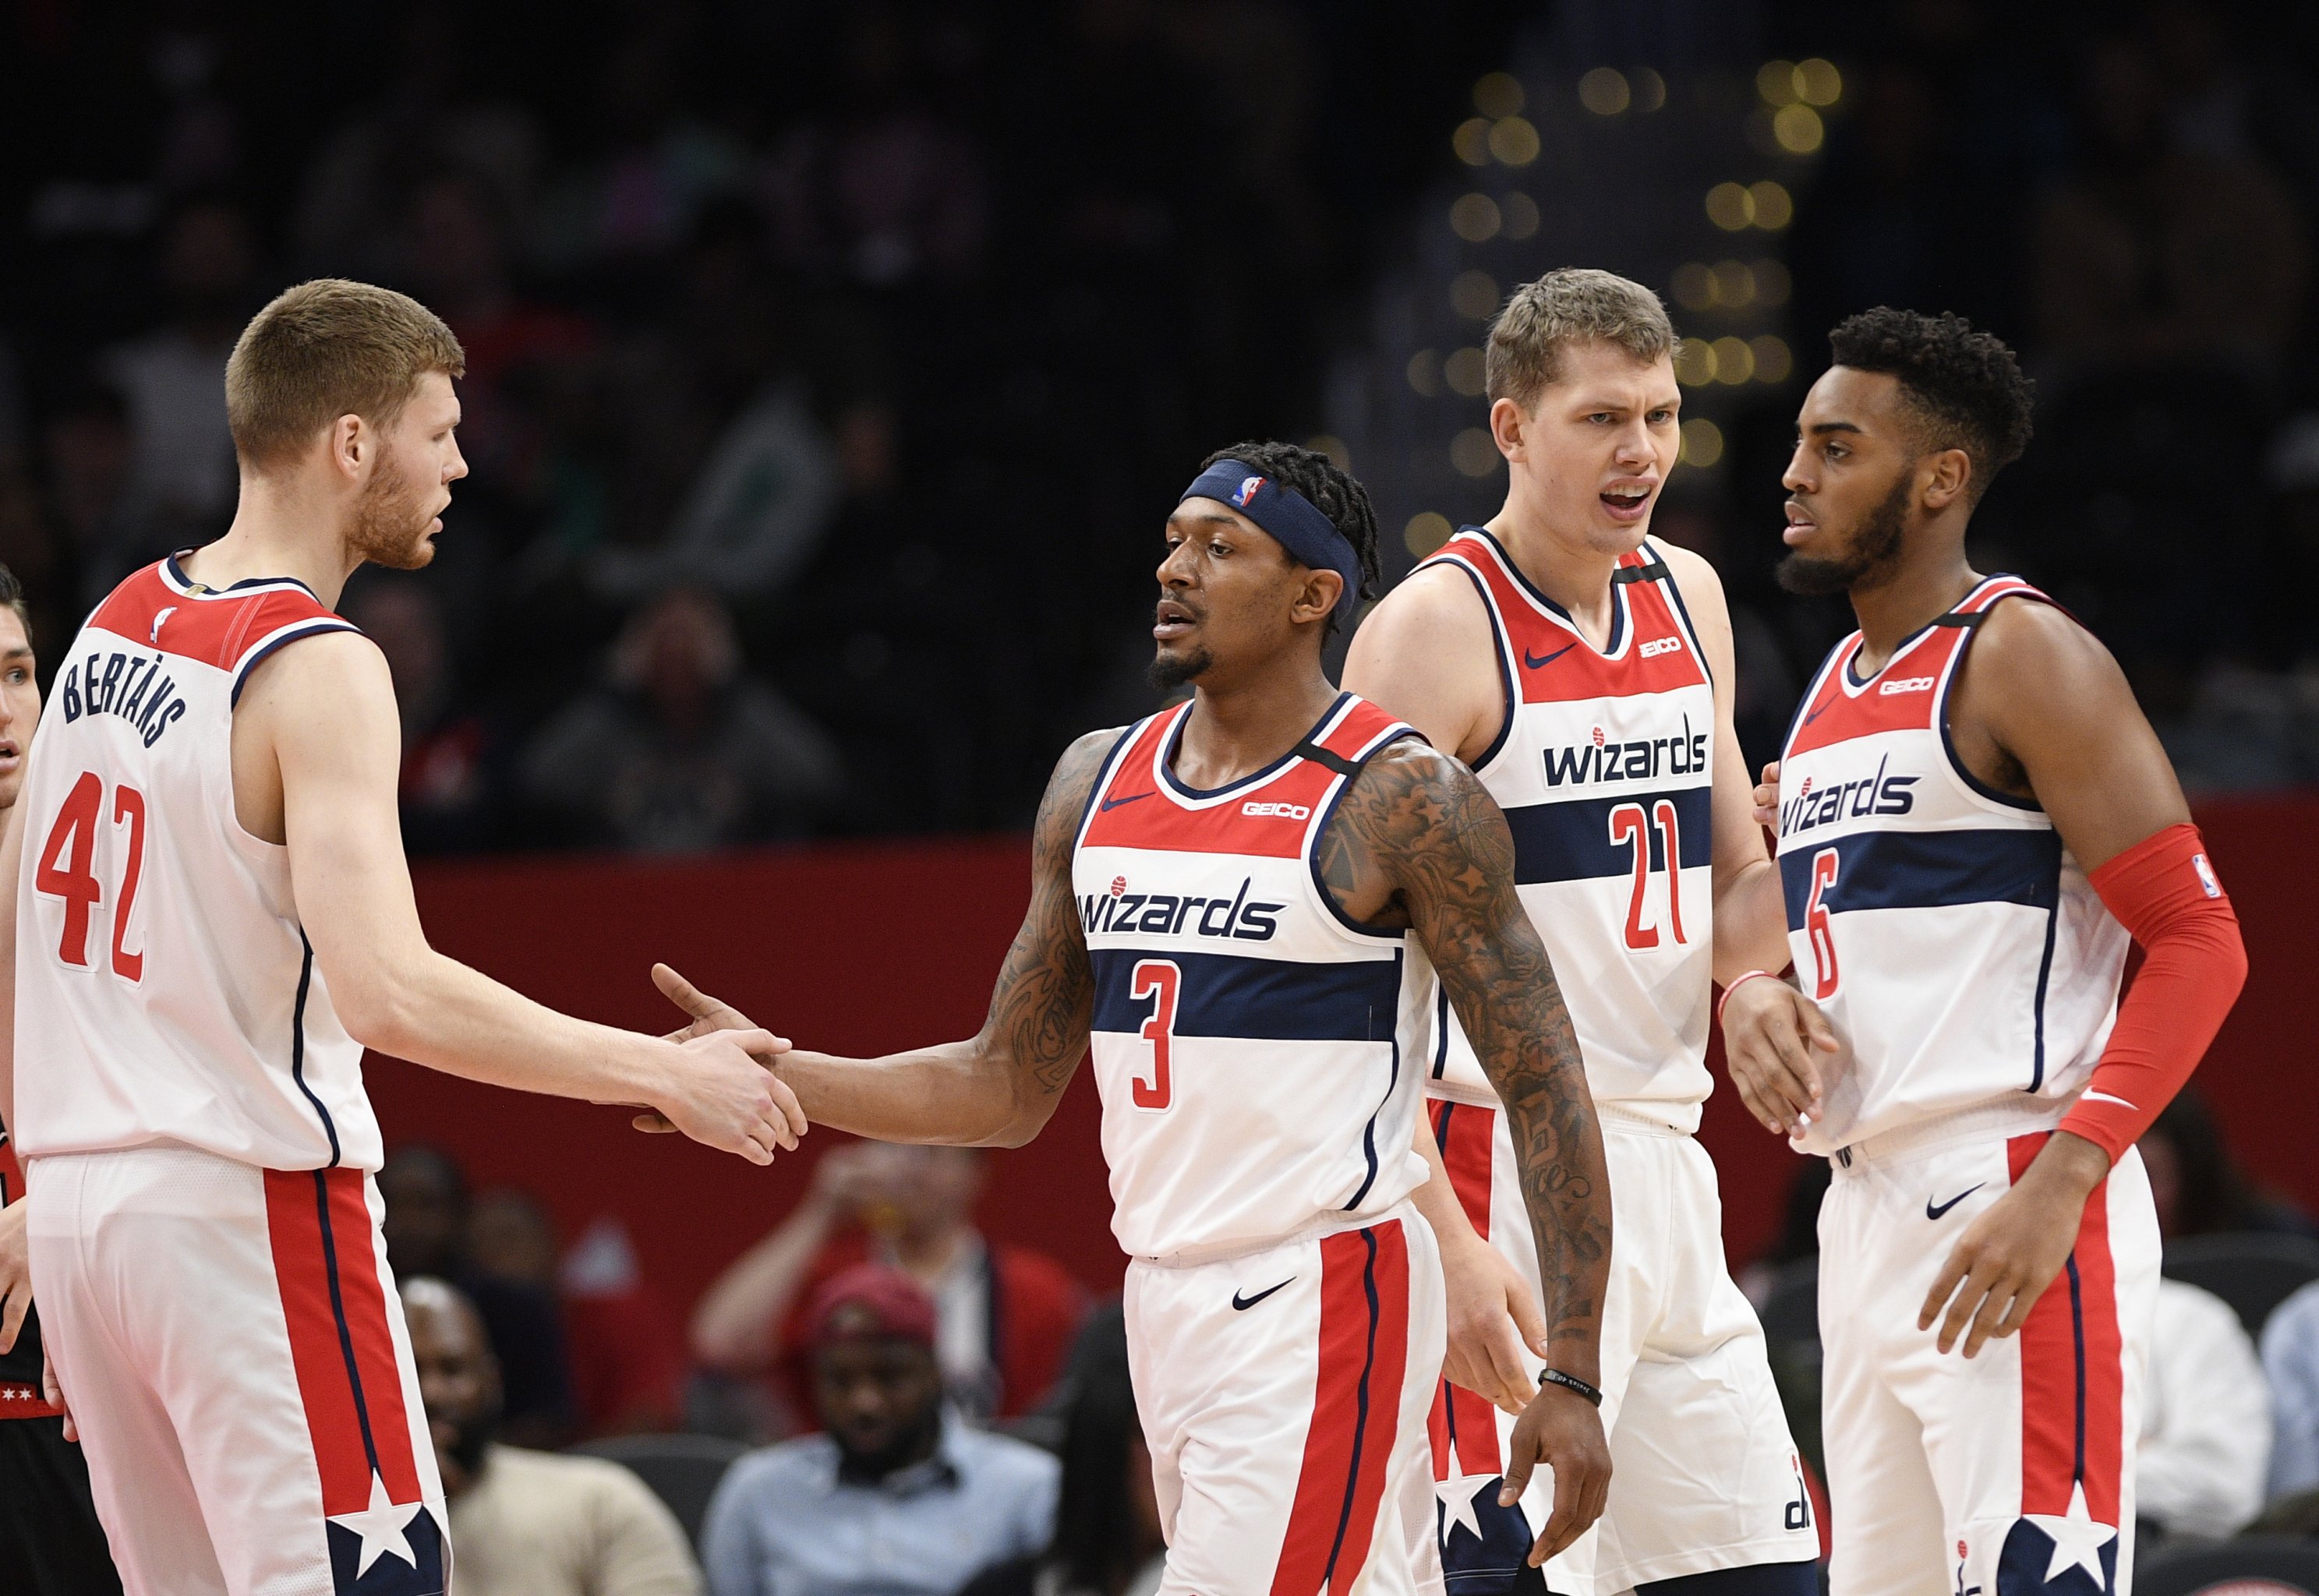 Bradley Beal - Washington Wizards - 2018 NBA Playoffs Game-Worn 'Statement'  Jersey